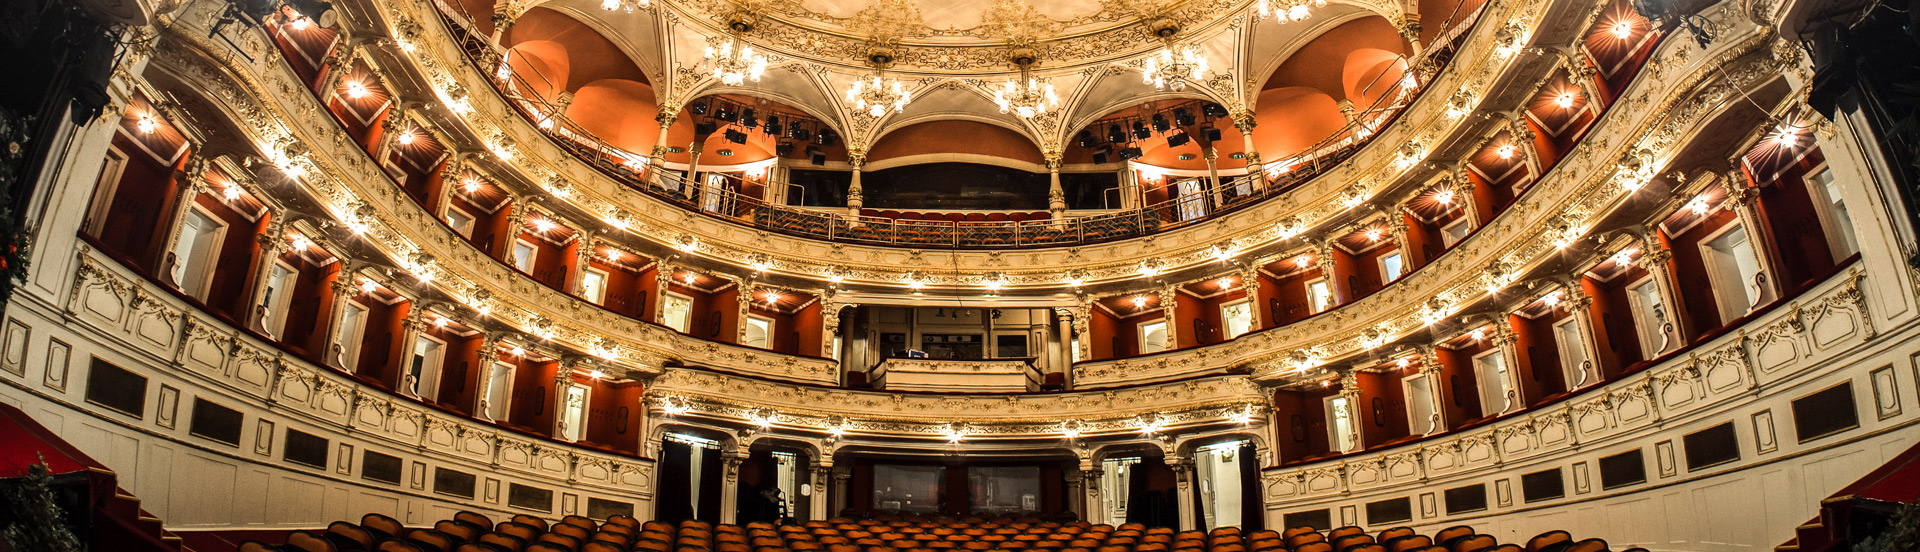 A Pécsi Nemzeti Színház belső képe a színpadról nézve a nézőteret látva